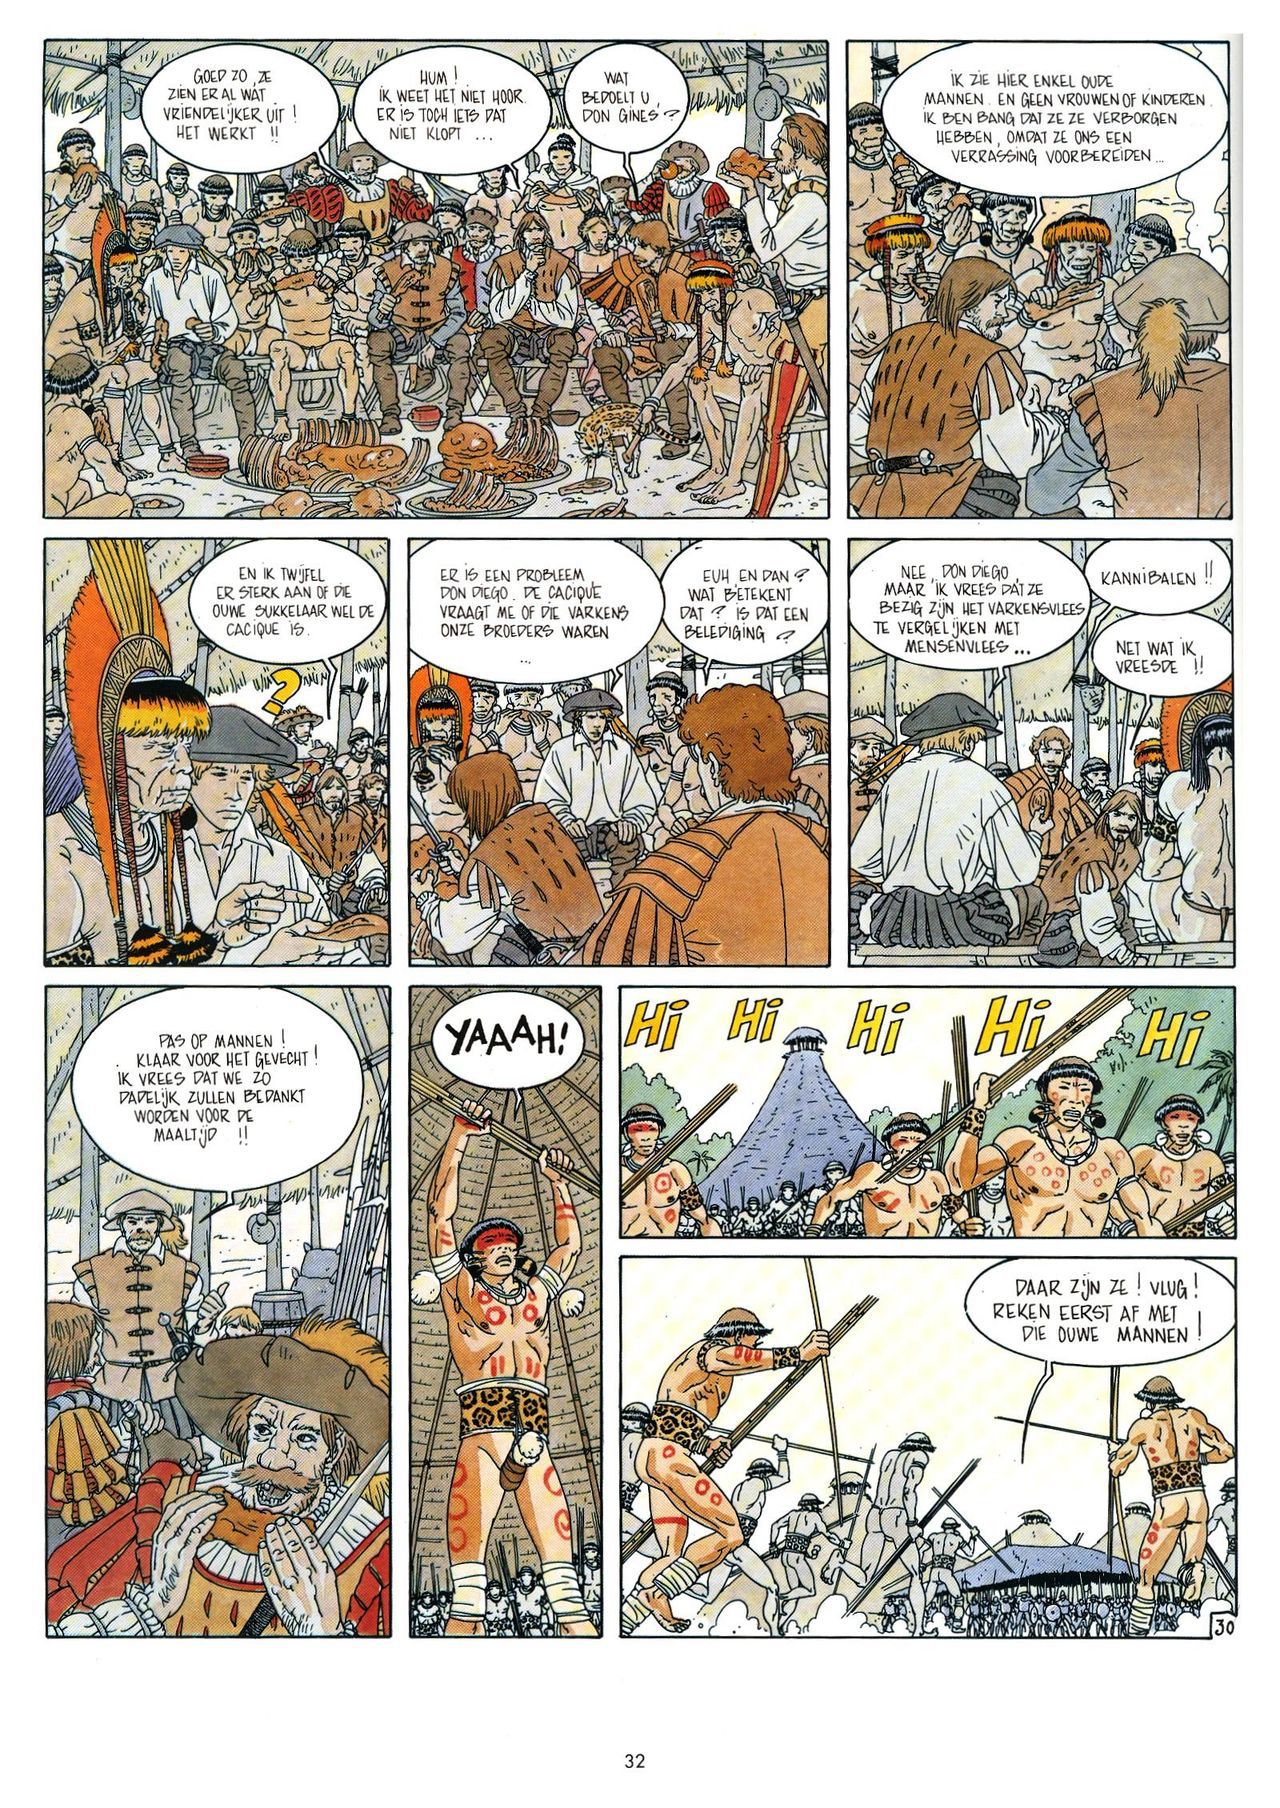 Eldorado - 03 - De Jaguarmensen (Dutch) Franstalige strips die op deze site staan, hier is de Nederlandse uitgave! 32